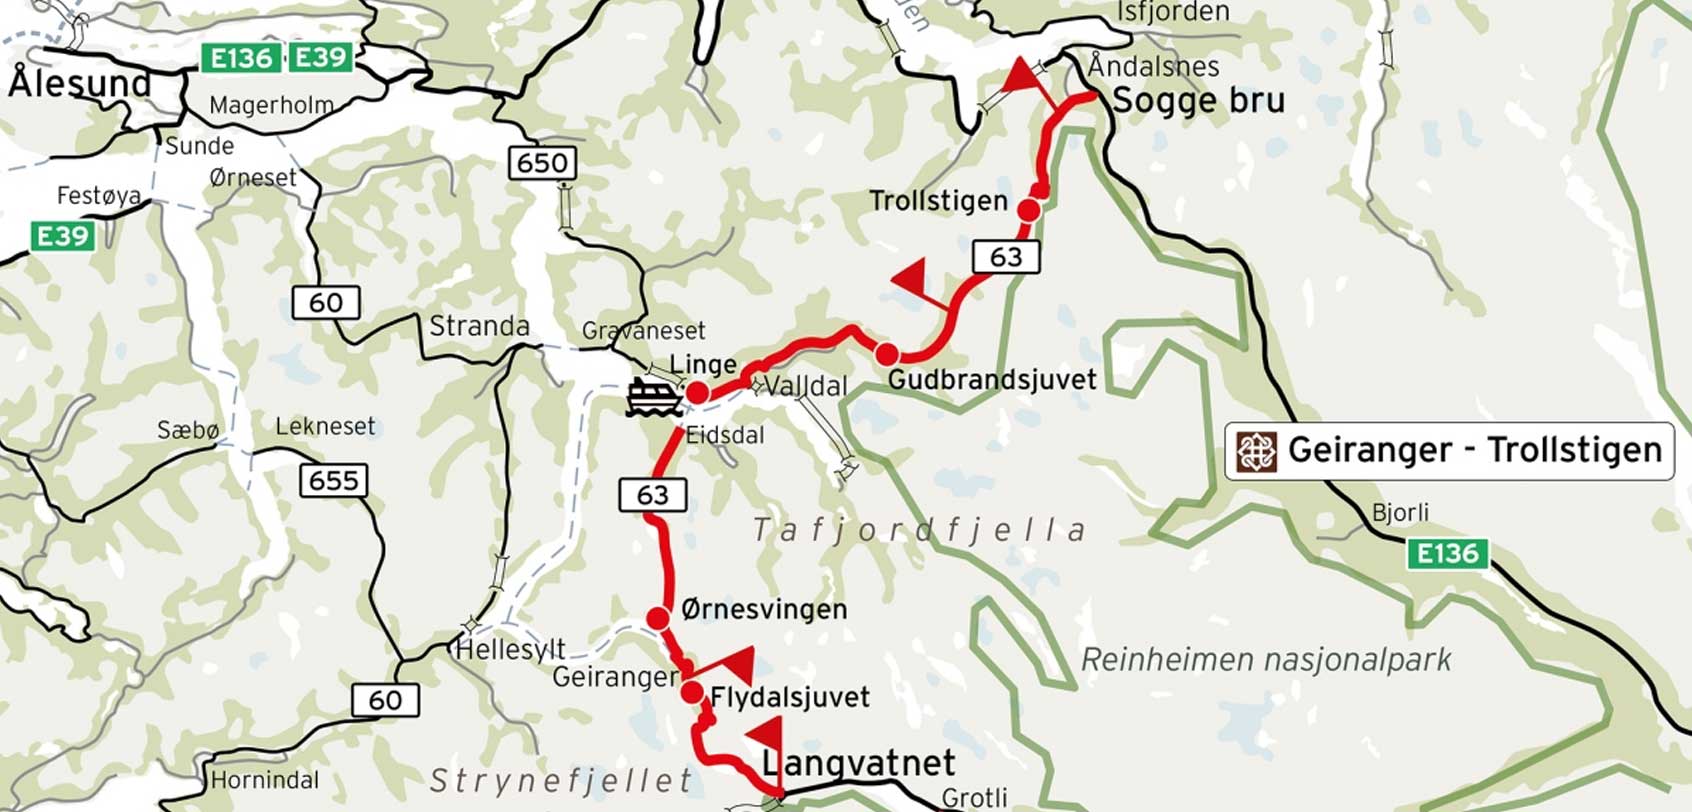 Geiranger Trollstigen Map